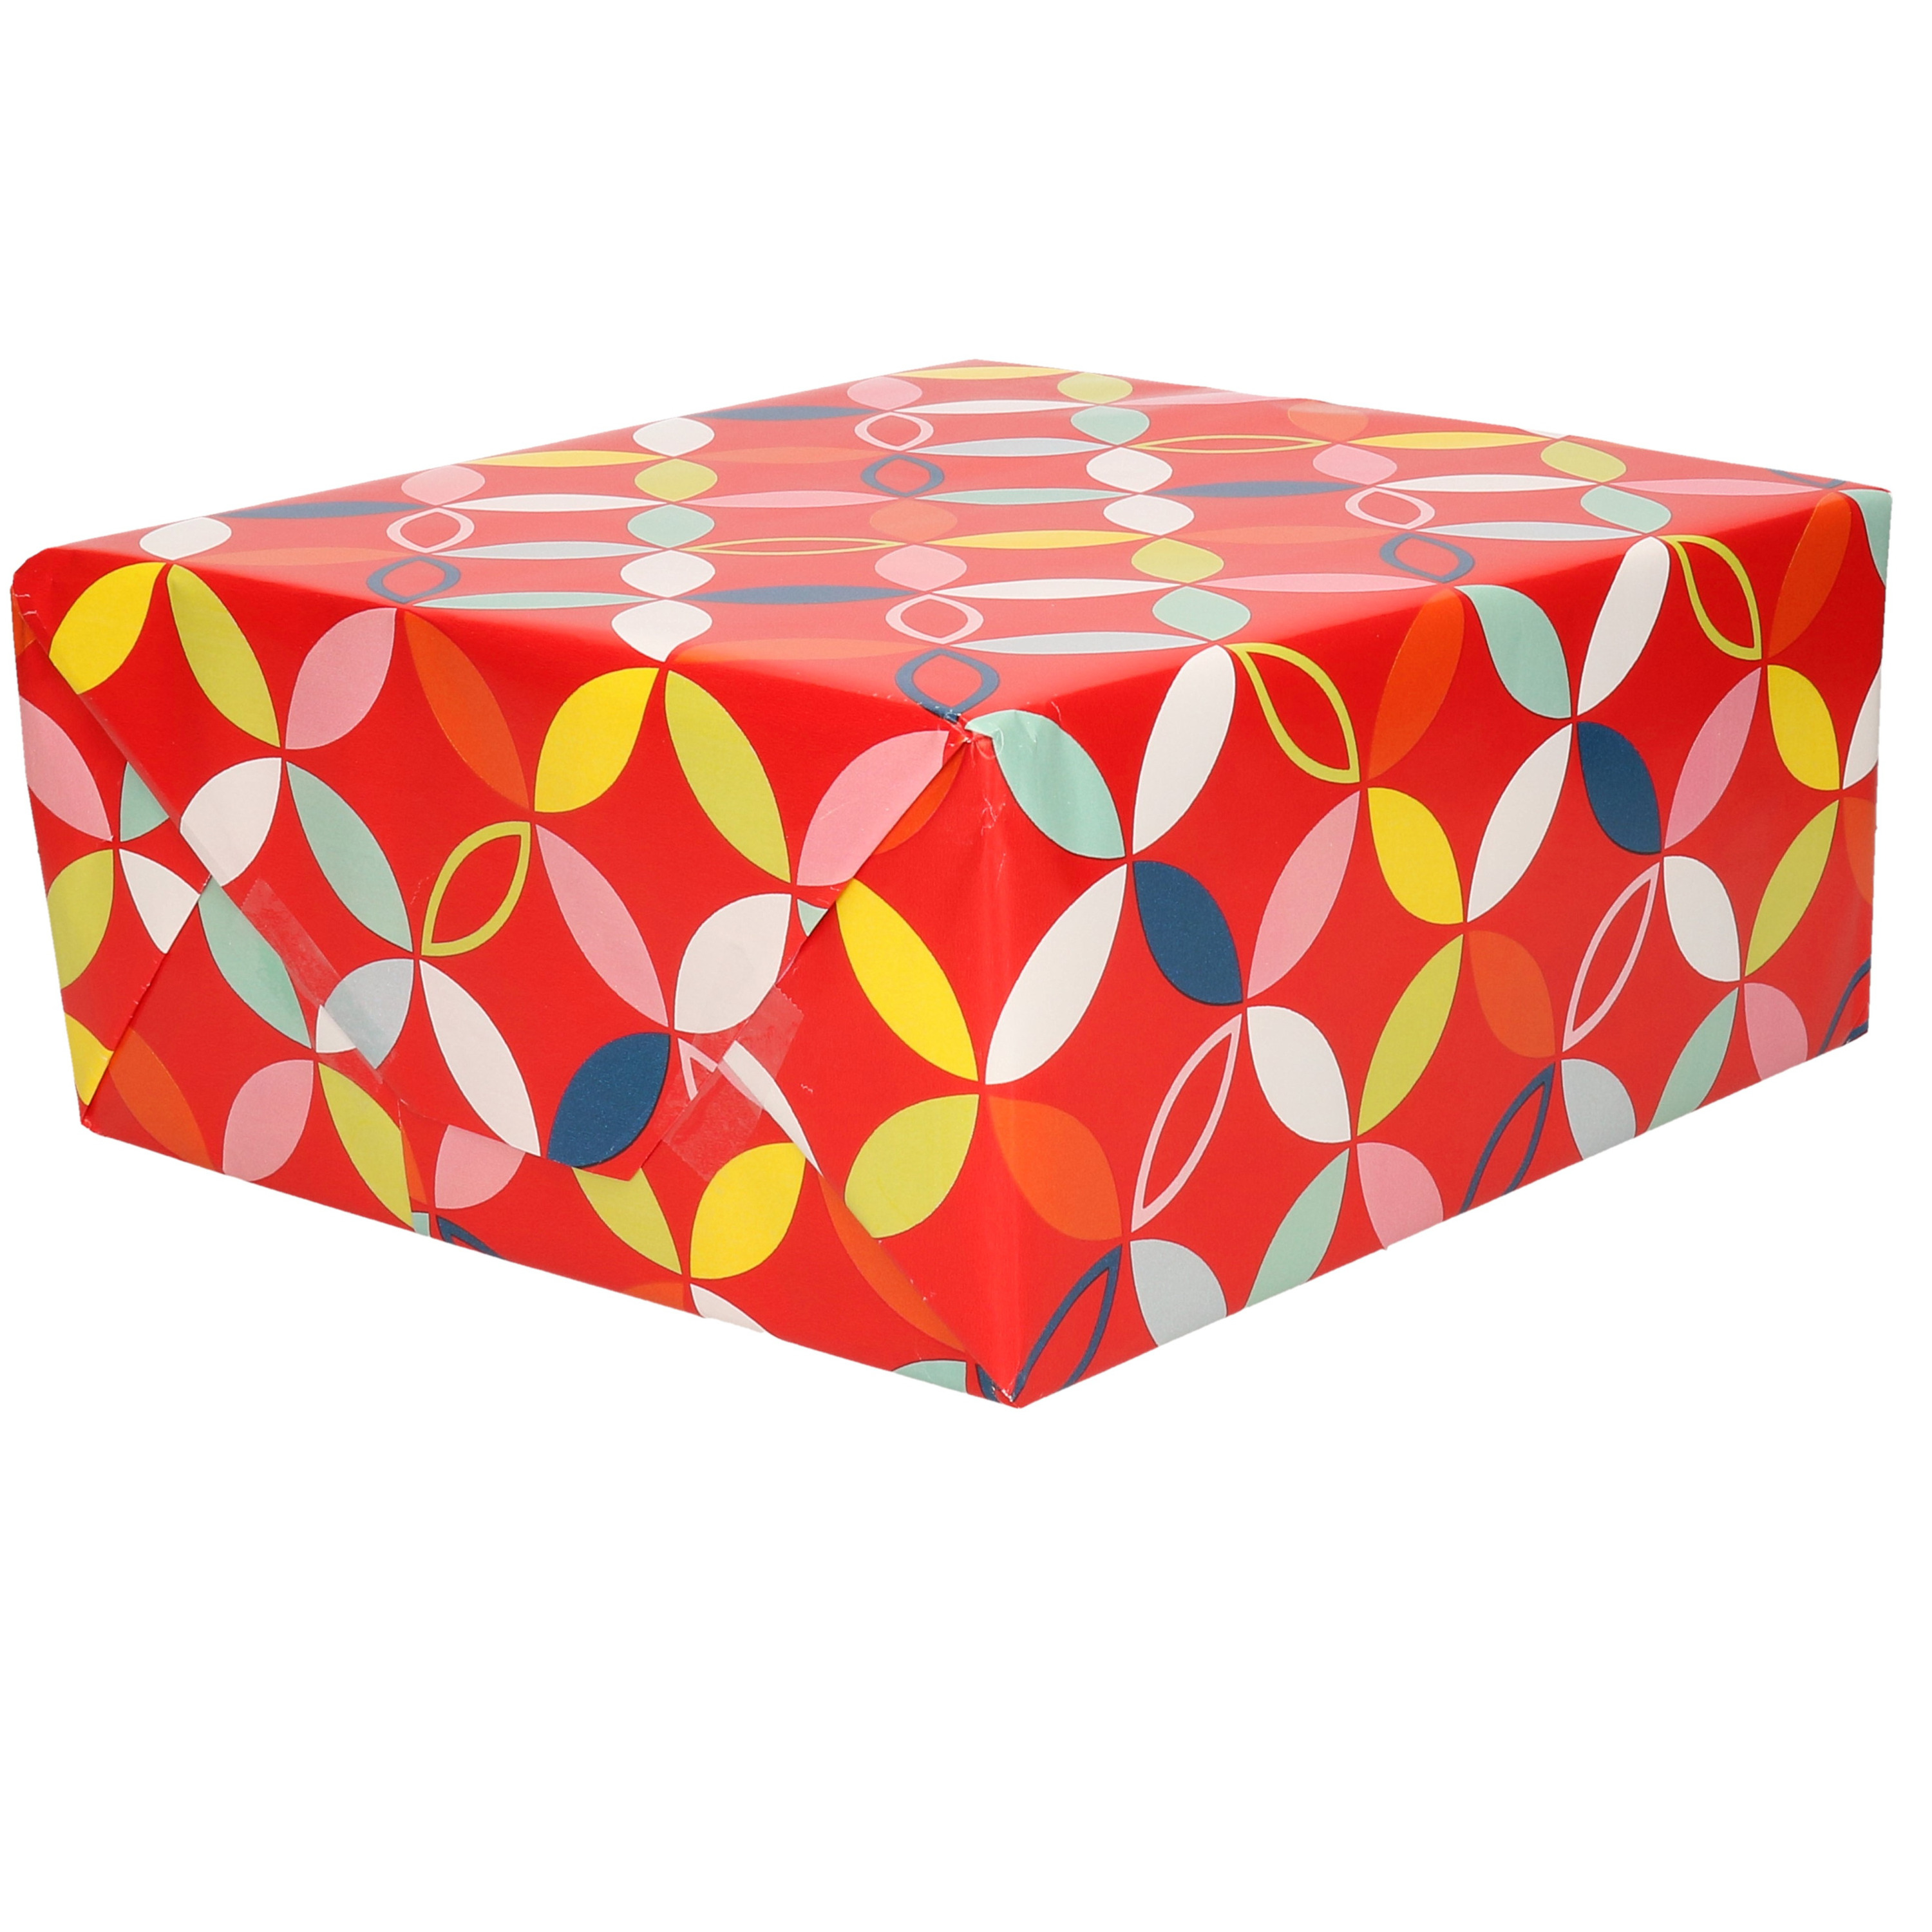 1x Inpakpapier/cadeaupapier rood met bloem figuren motief 200 x 70 cm rol